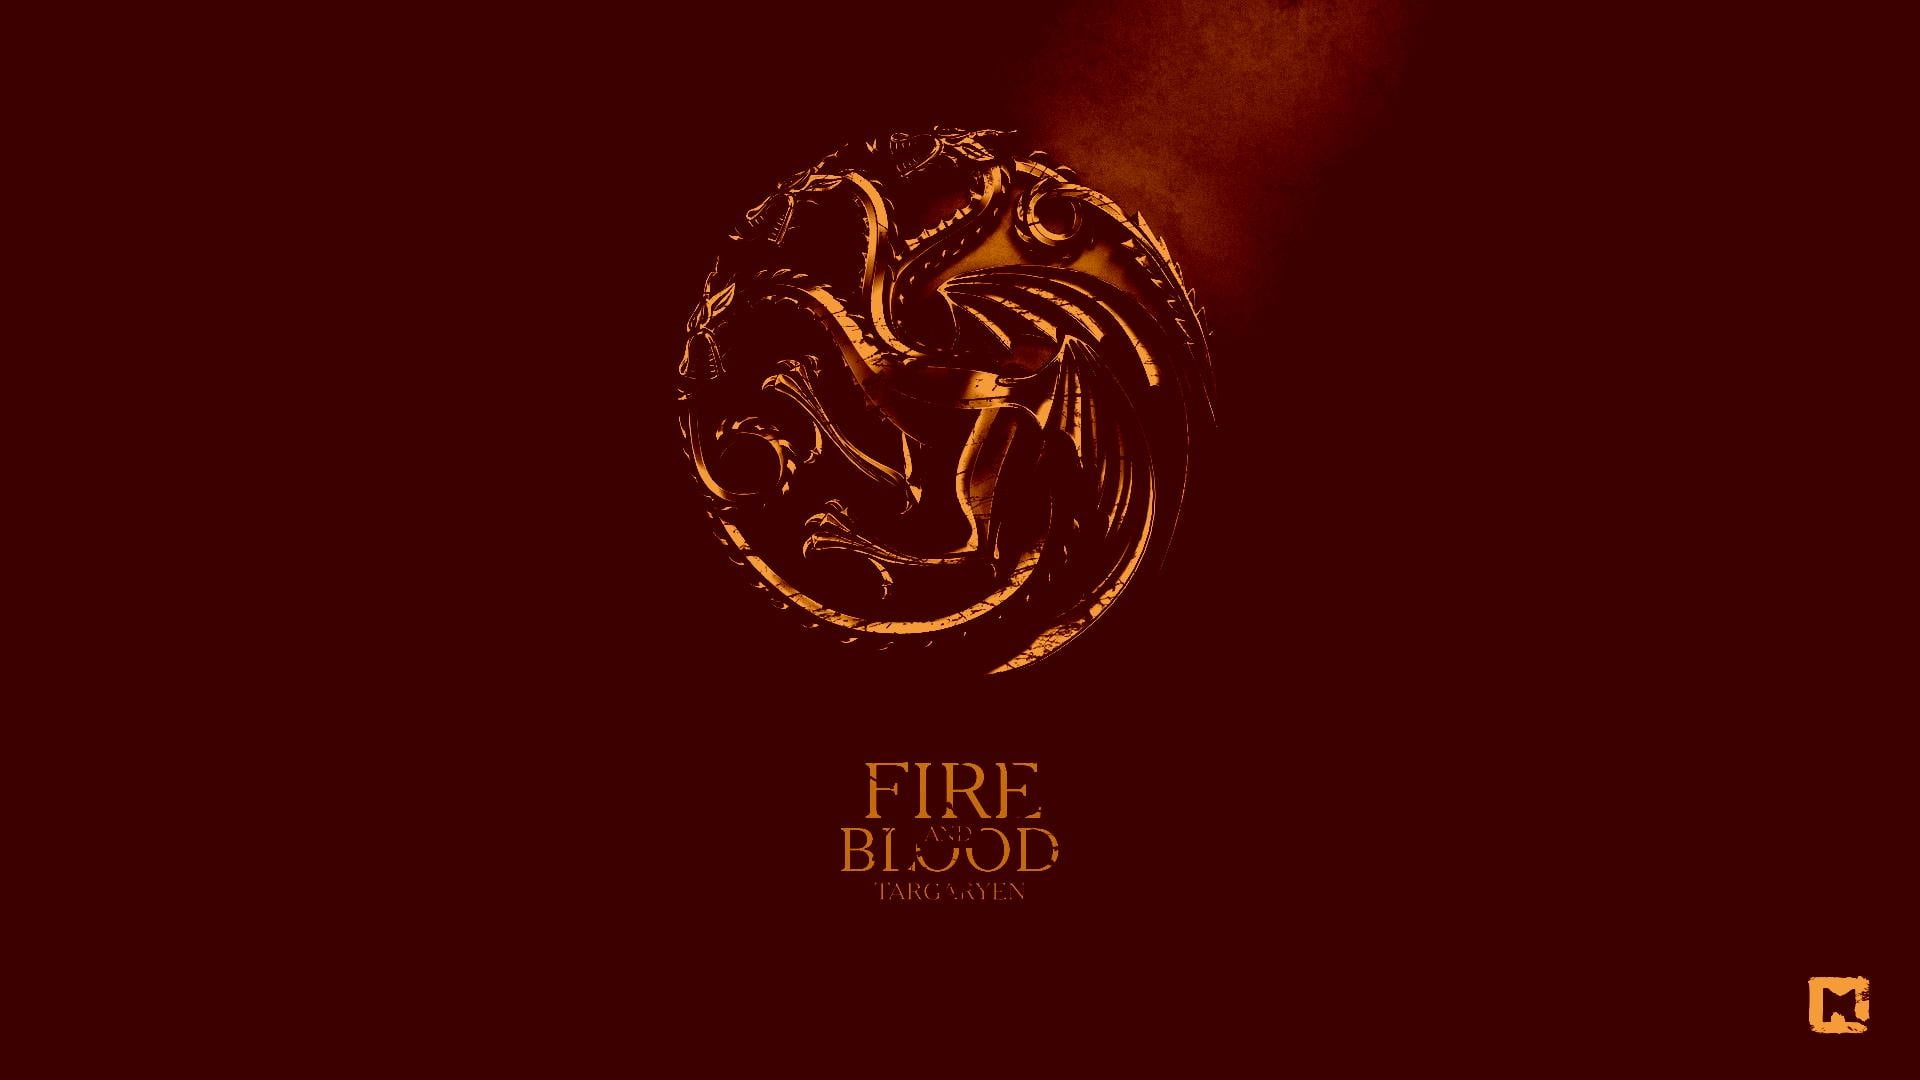 Fire Blood logo, Game of Thrones, House Targaryen, dragon, sigils